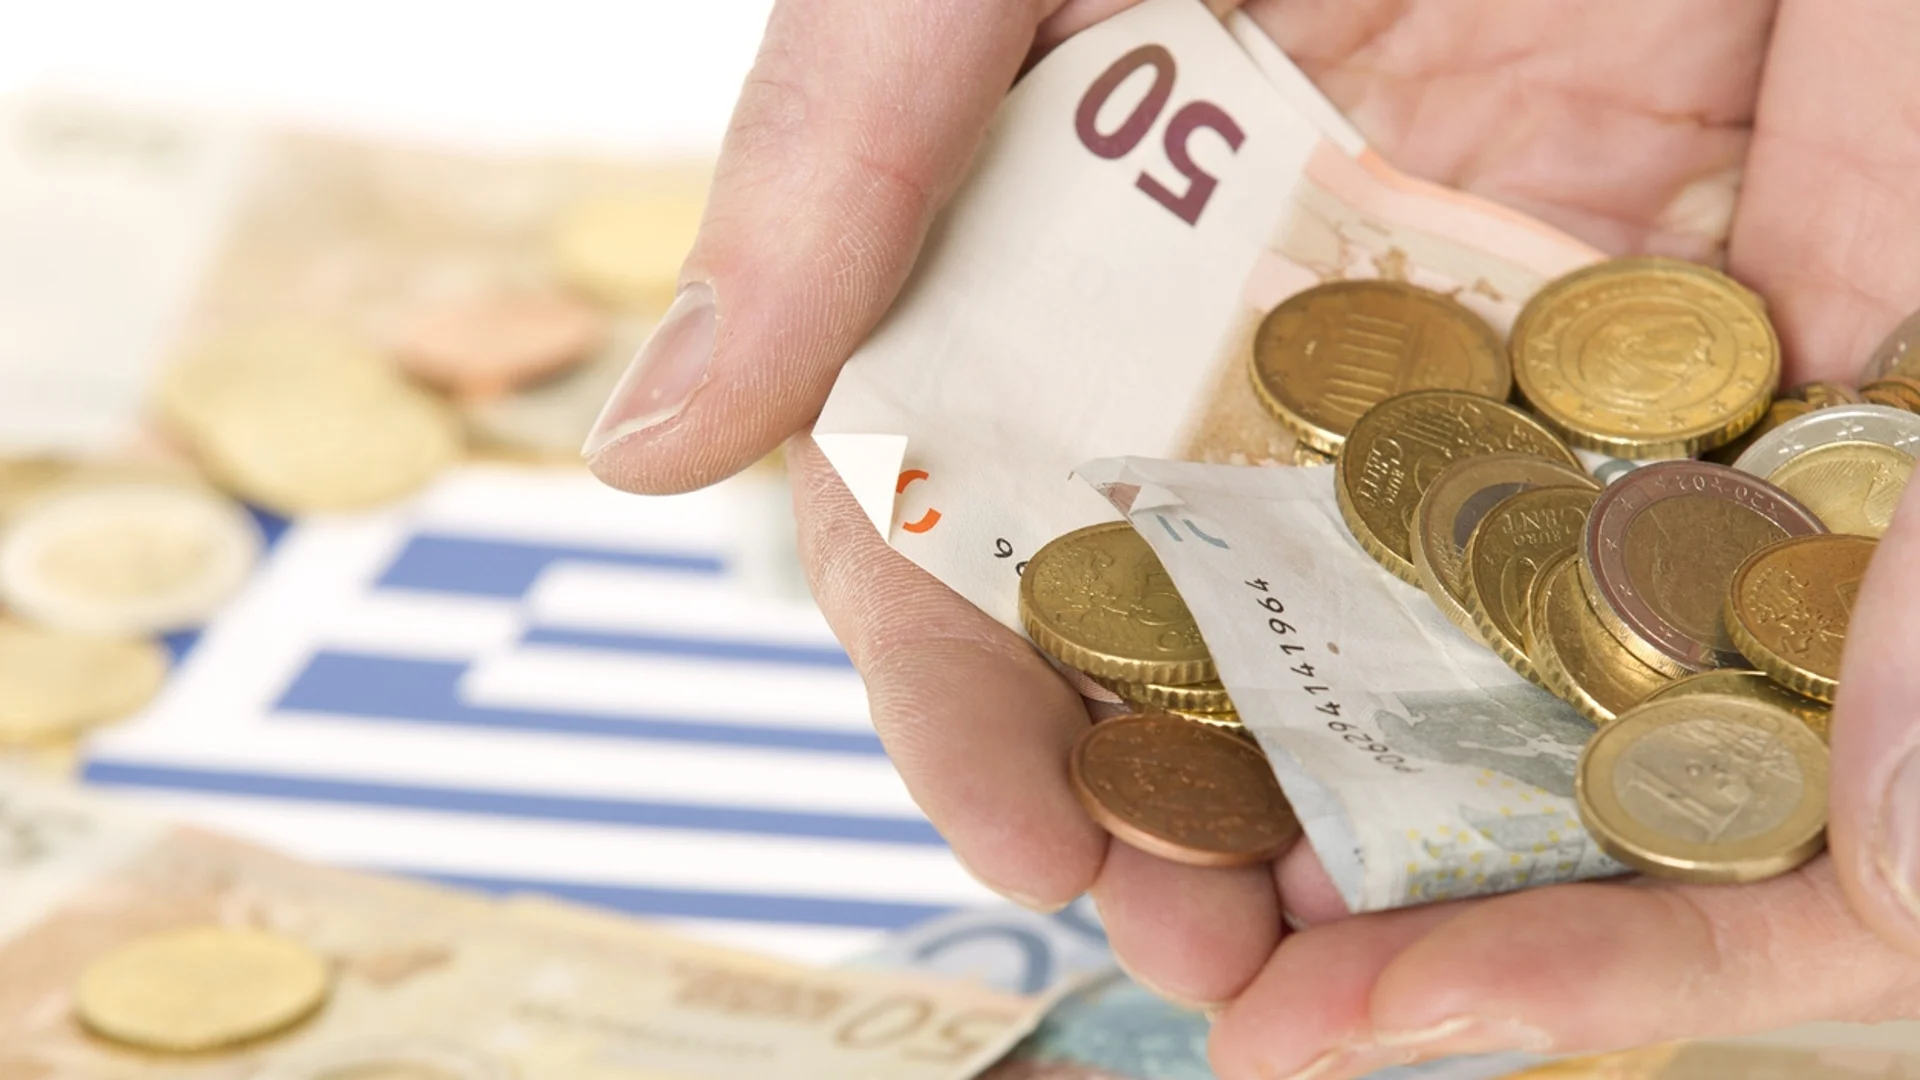 В Гърция: Разкриваш фалшива касова бележка, получаваш 3000 евро 